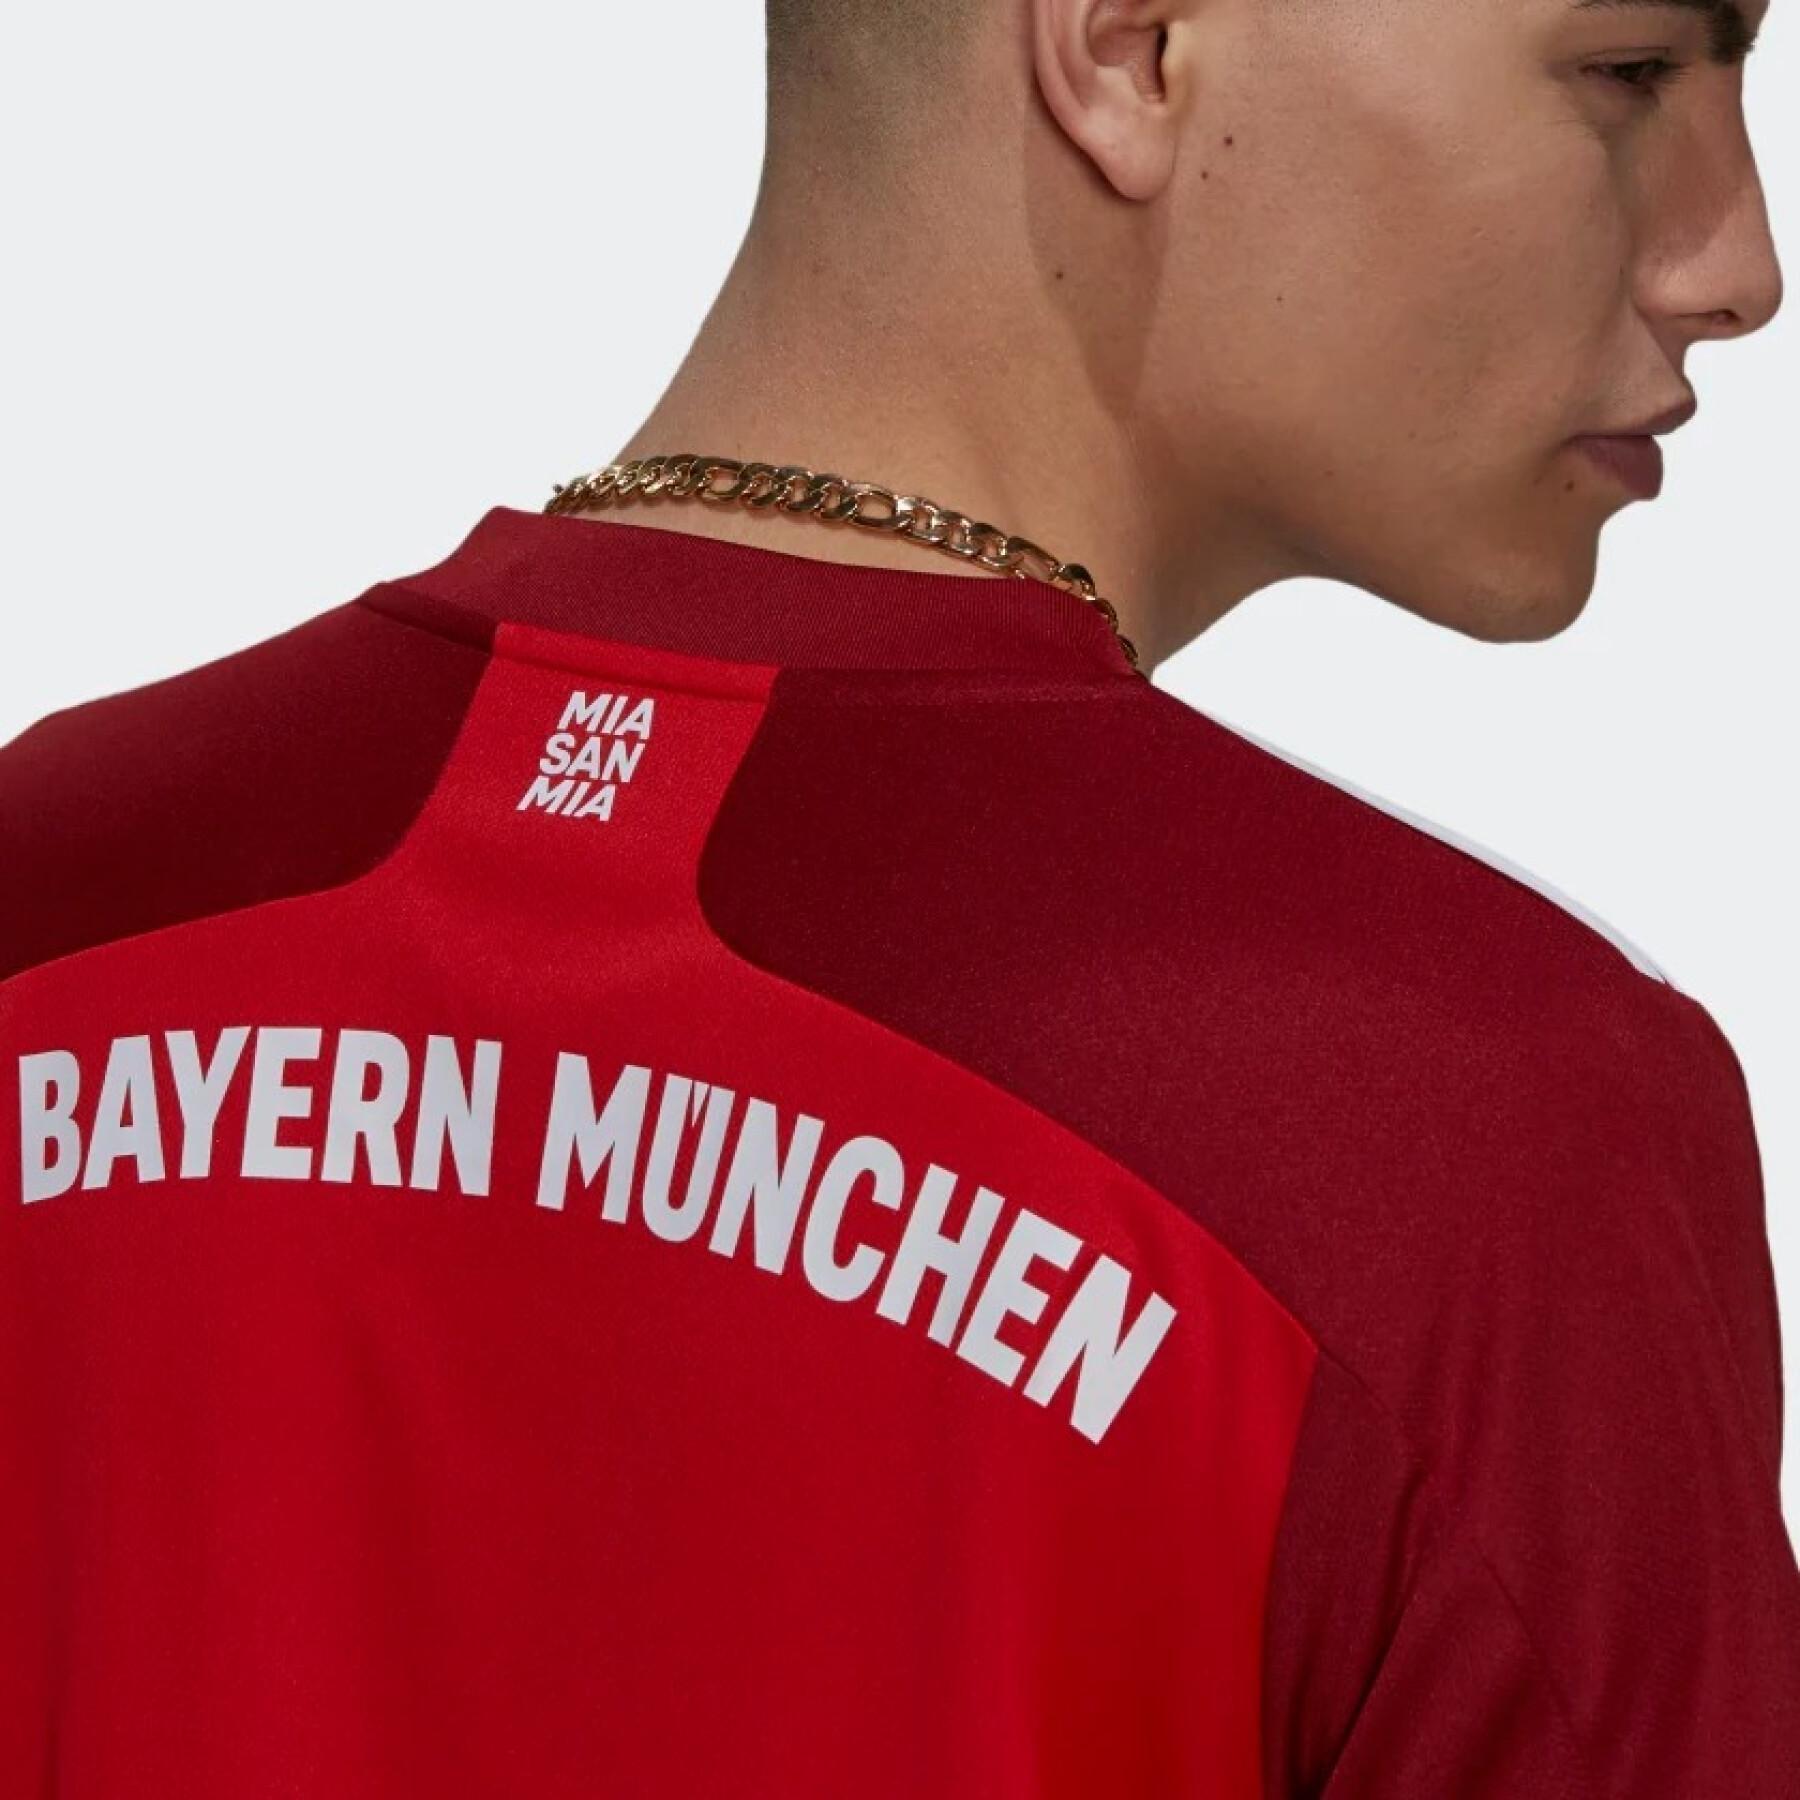 Koszulka domowa FC Bayern Munich 2021/22